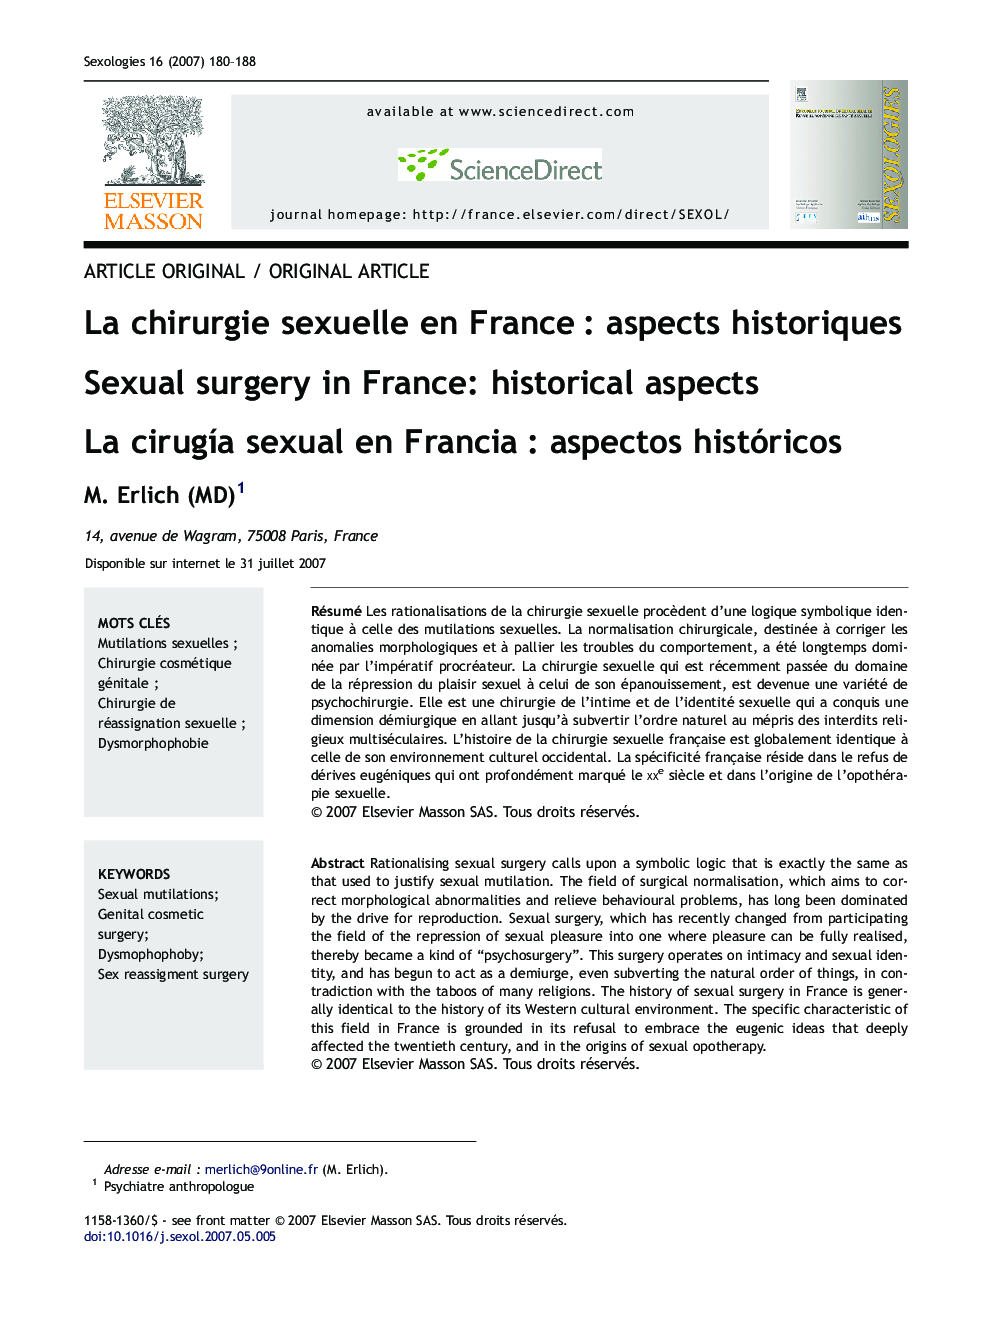 La chirurgie sexuelle en France : aspects historiques